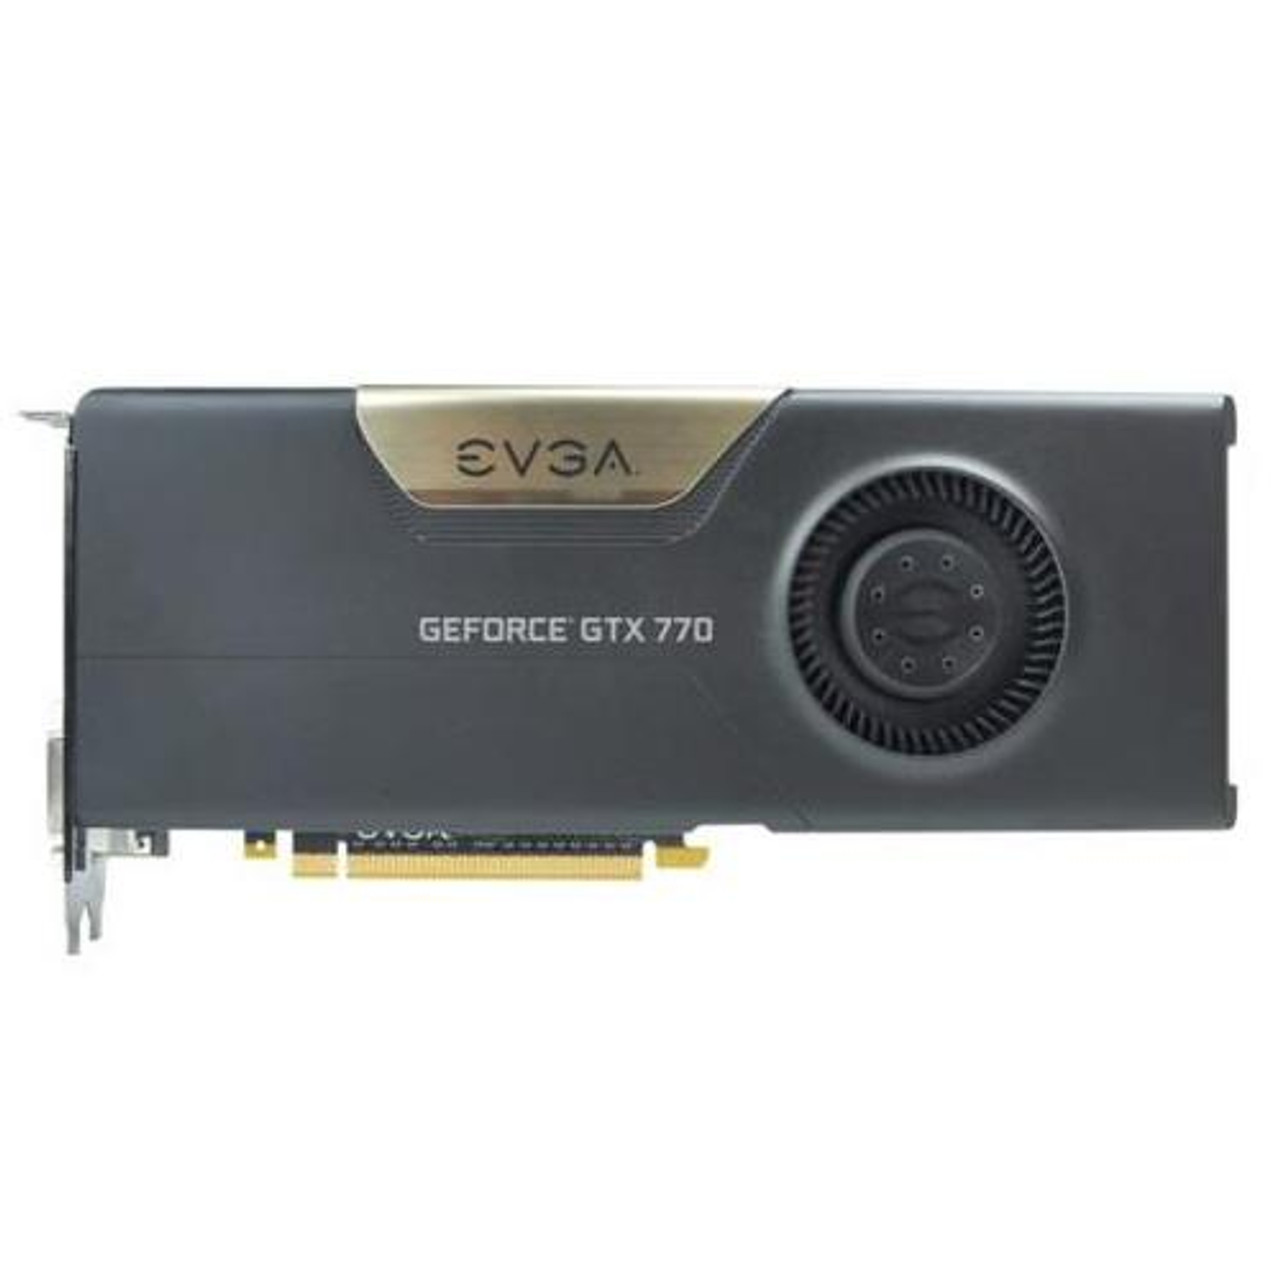 02G-P4-2770-KR EVGA GeForce GTX 770 2GB 